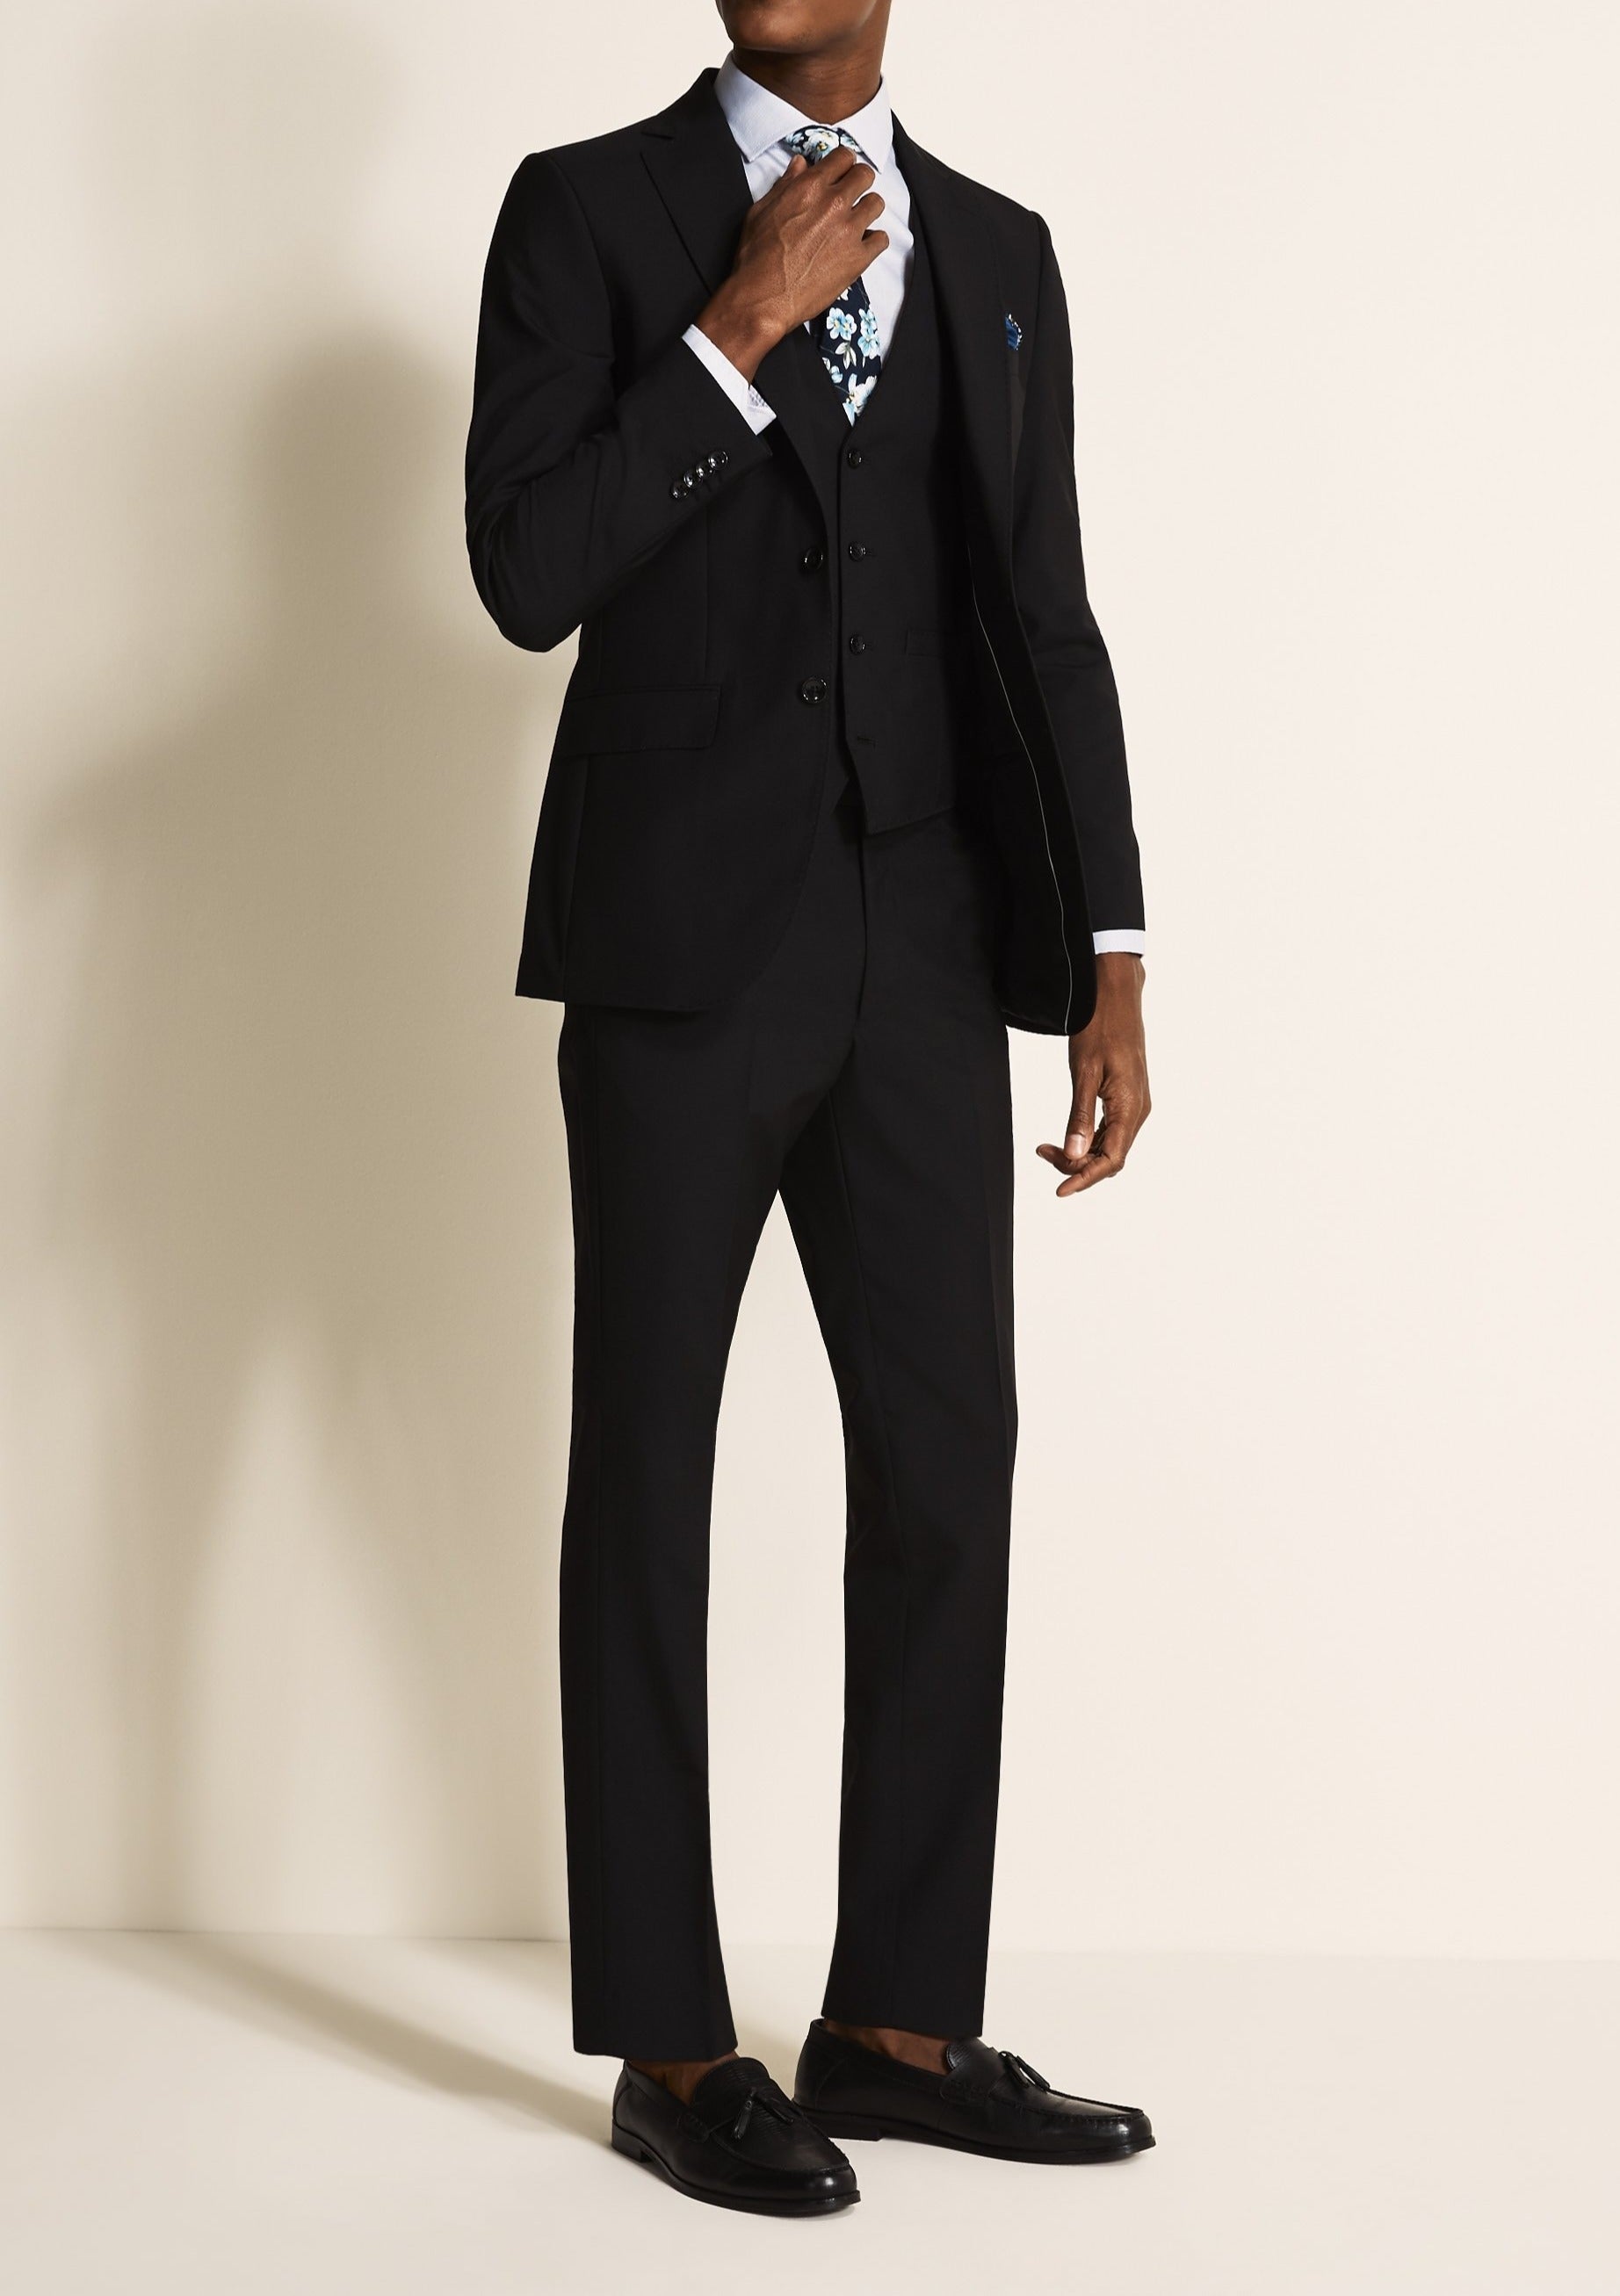 Glittery Black Shade Tuxedo Suit | Designer Men's Formal Wear